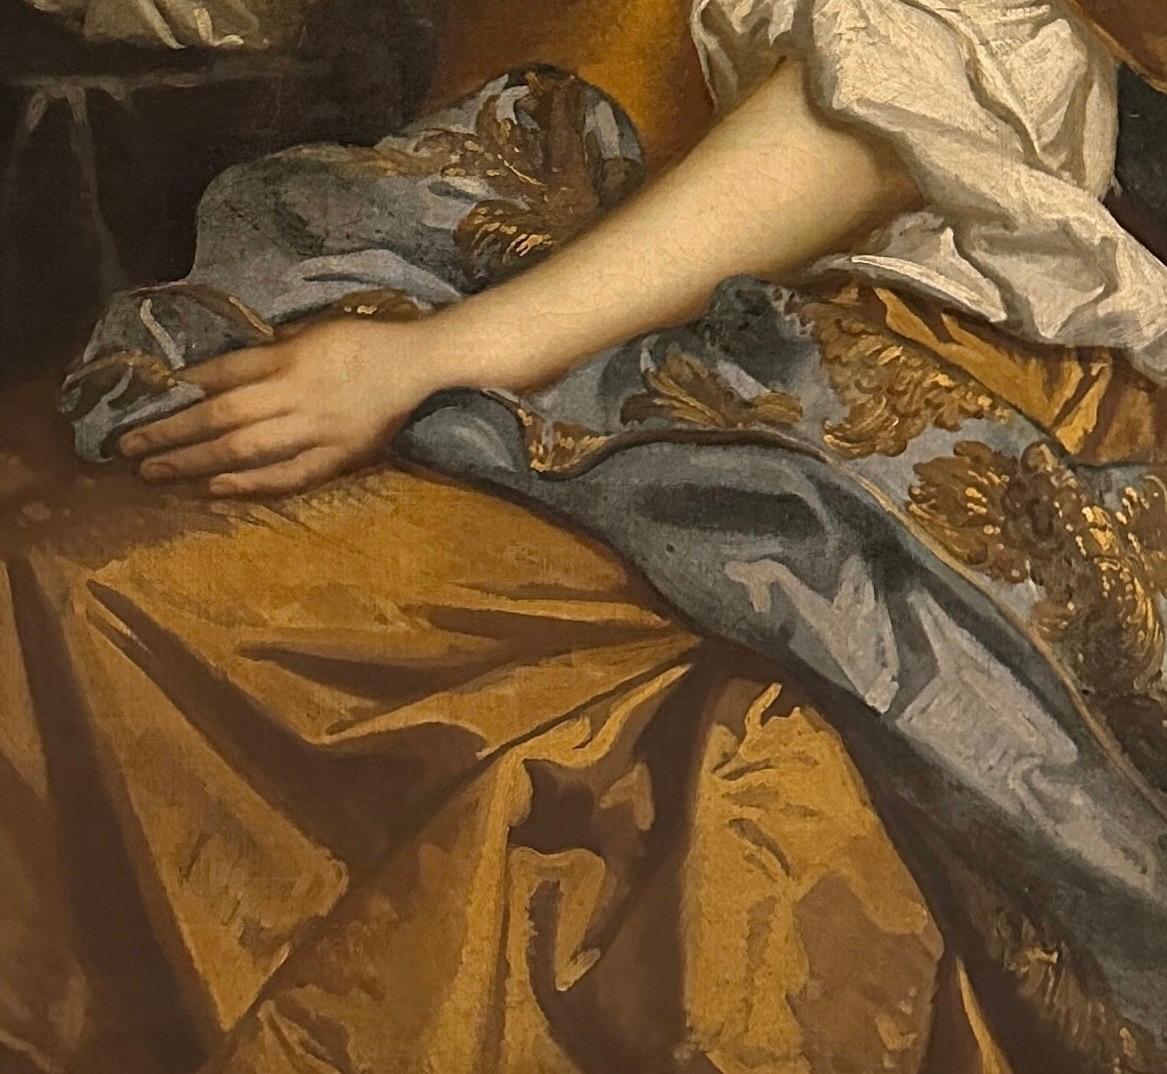 Porträt einer Dame, vermutlich Henrietta Hyde (geb. Boyle), Gräfin von Rochester, (1646-1687), dreiviertel lang, in einem bernsteinfarbenen Seidenkleid und einem bestickten blauen Mantel, in einem Innenraum sitzend.

Öl auf Leinwand in einem